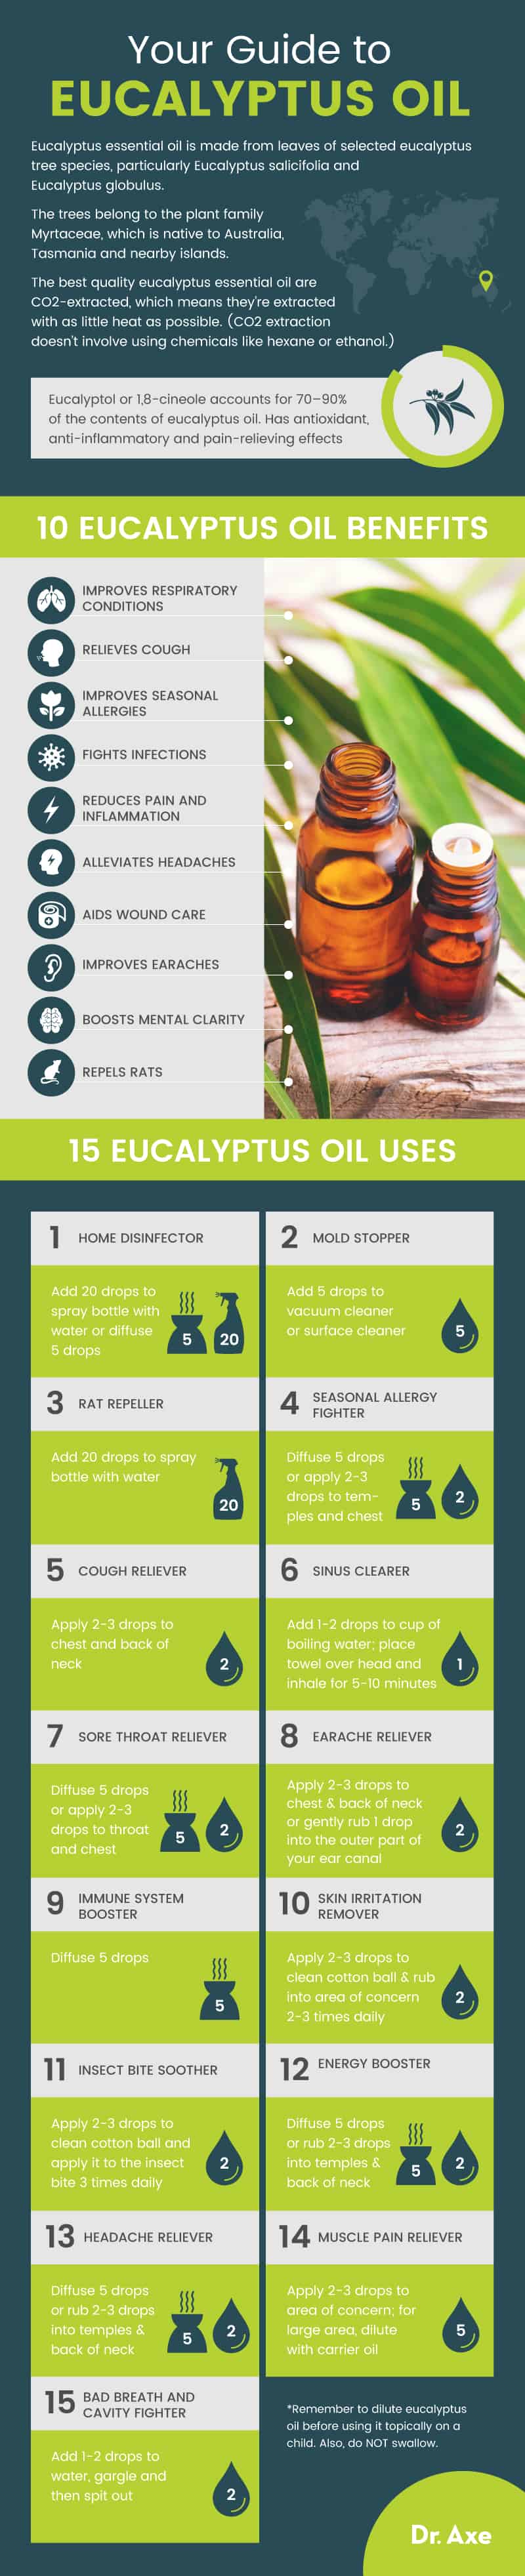 Eucalyptus oil guide - Dr. Axe